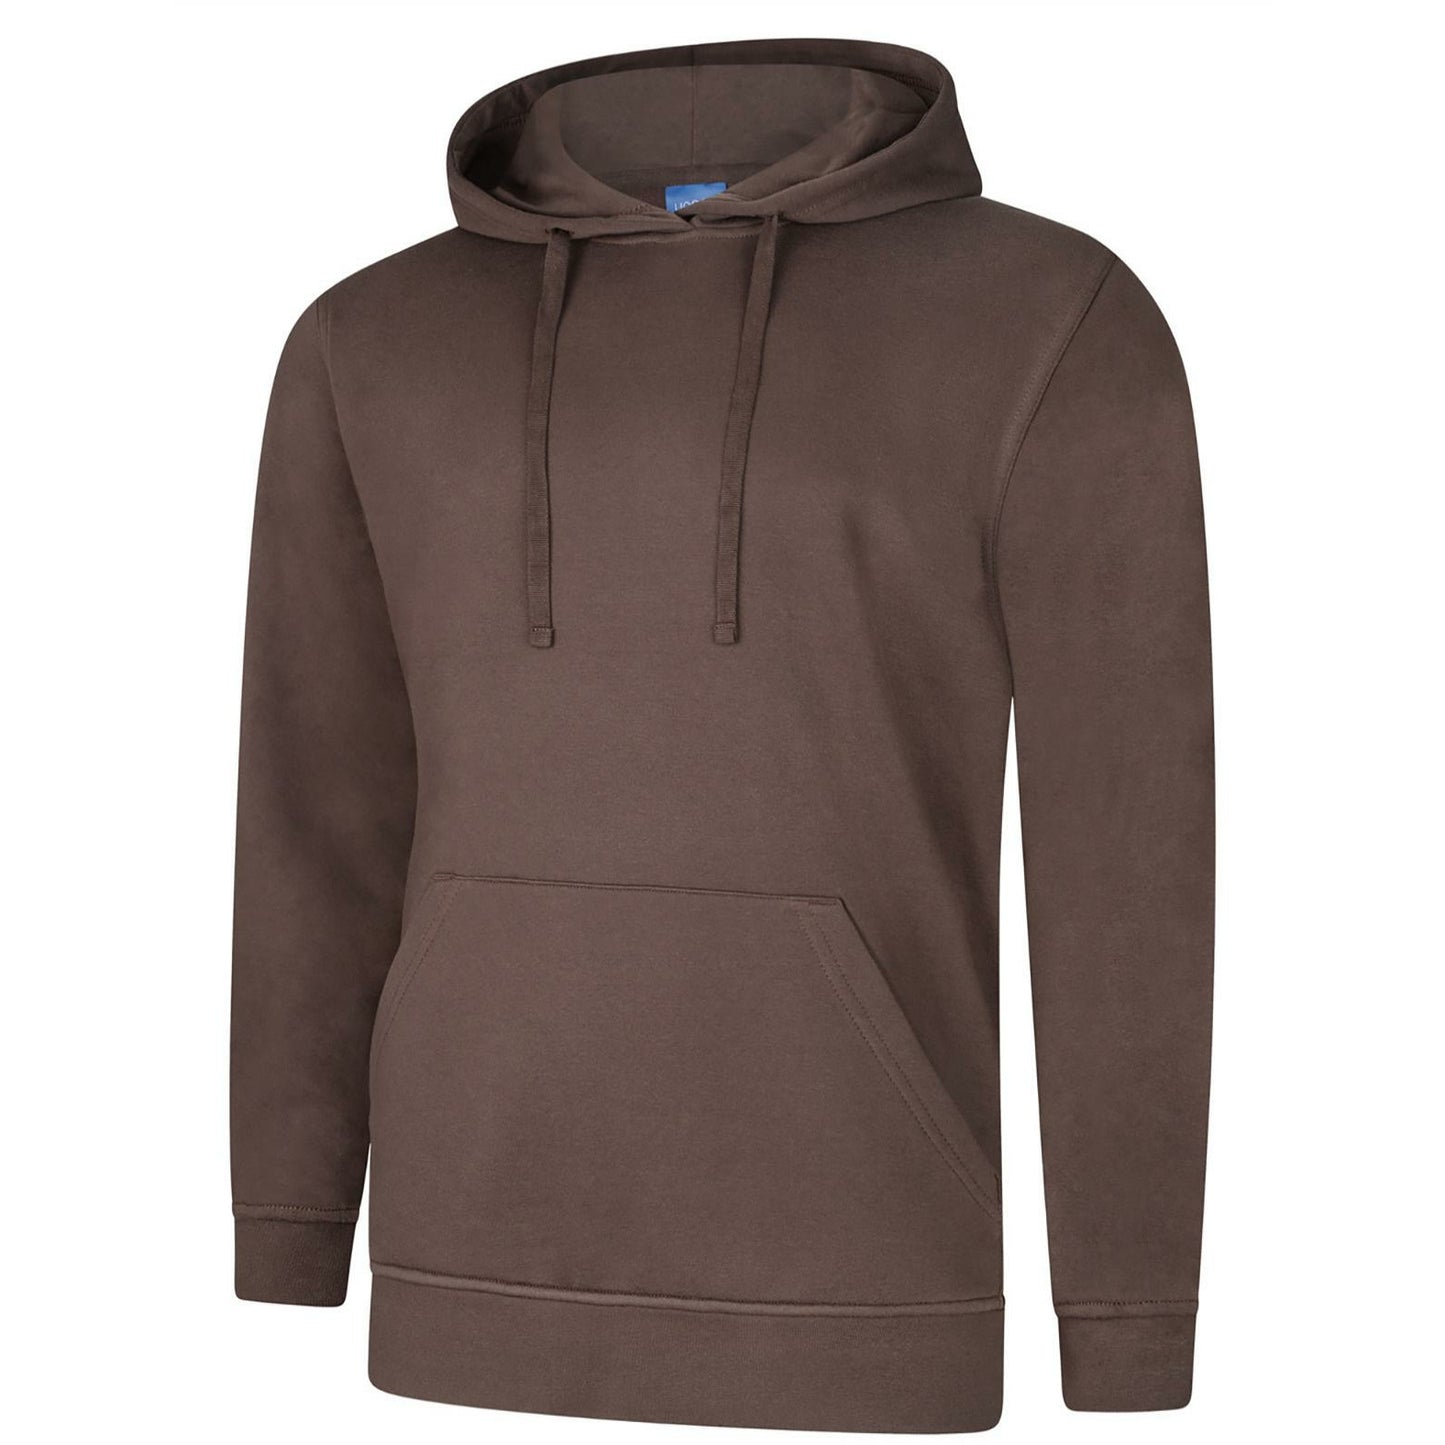 Deluxe Hooded Sweatshirt (XS - M) Brown